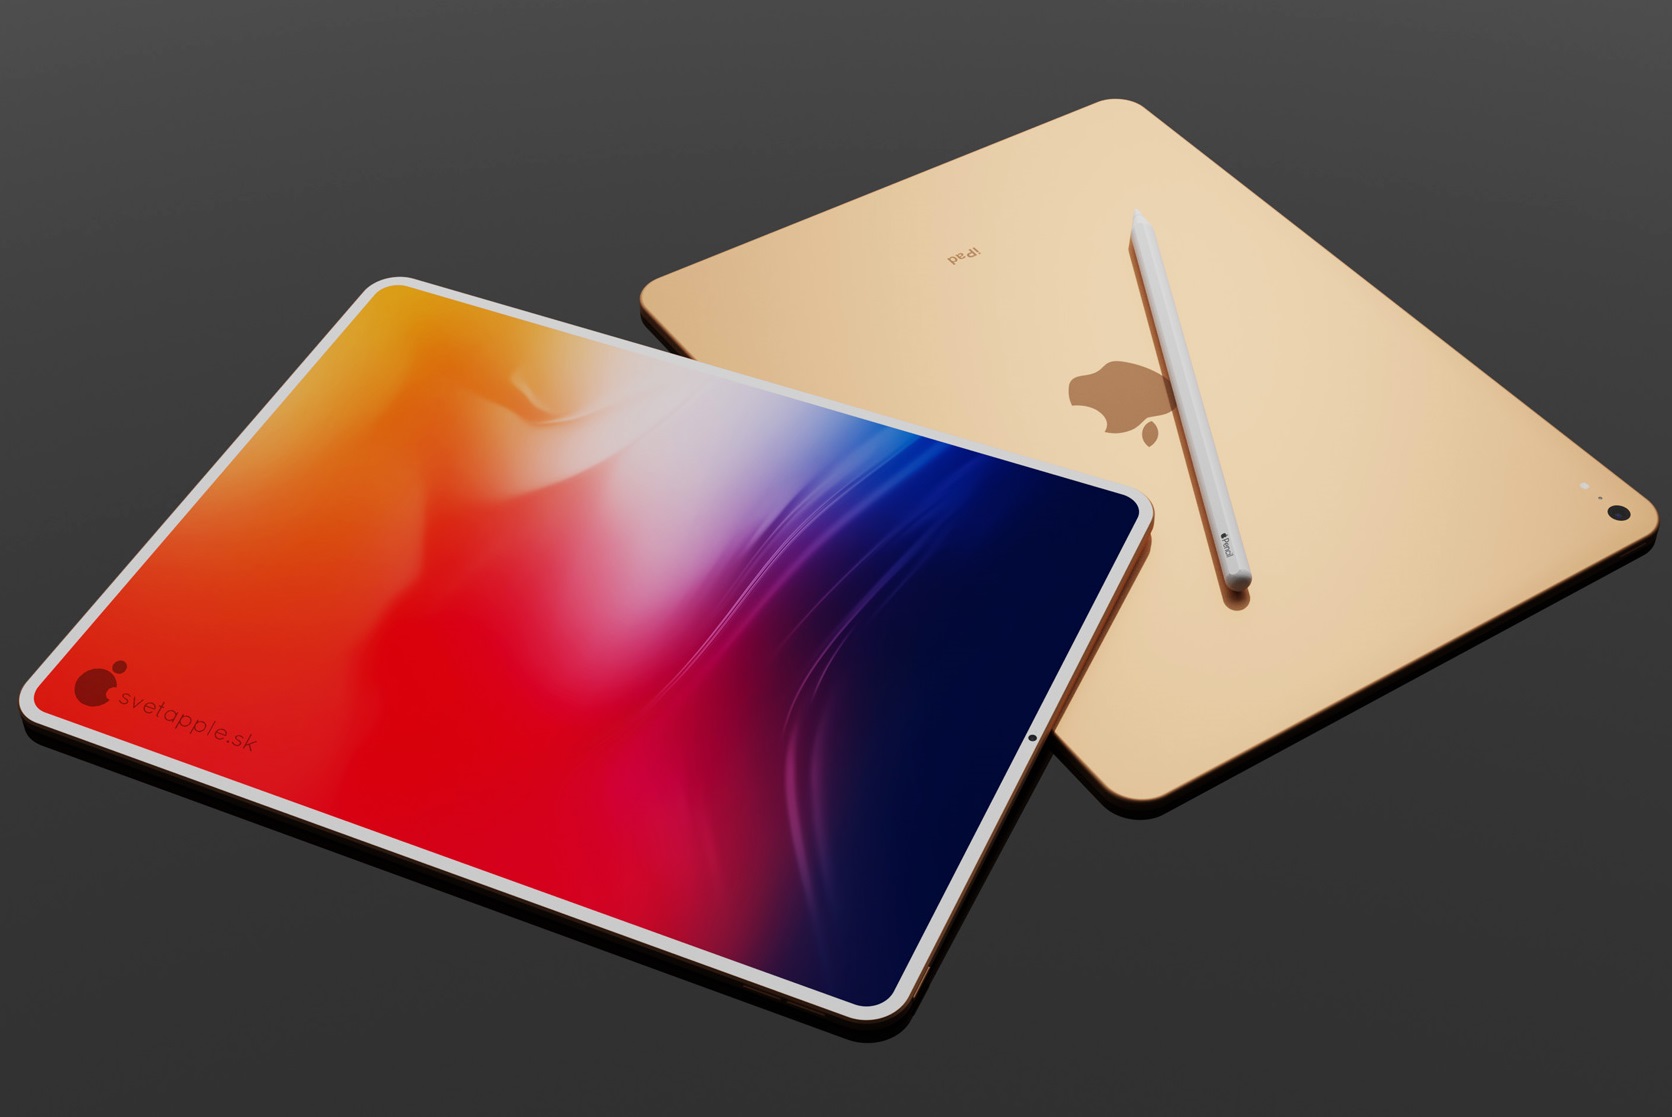 Apple iPad Air 4 soll im März 2021 im iPad ProDesign starten